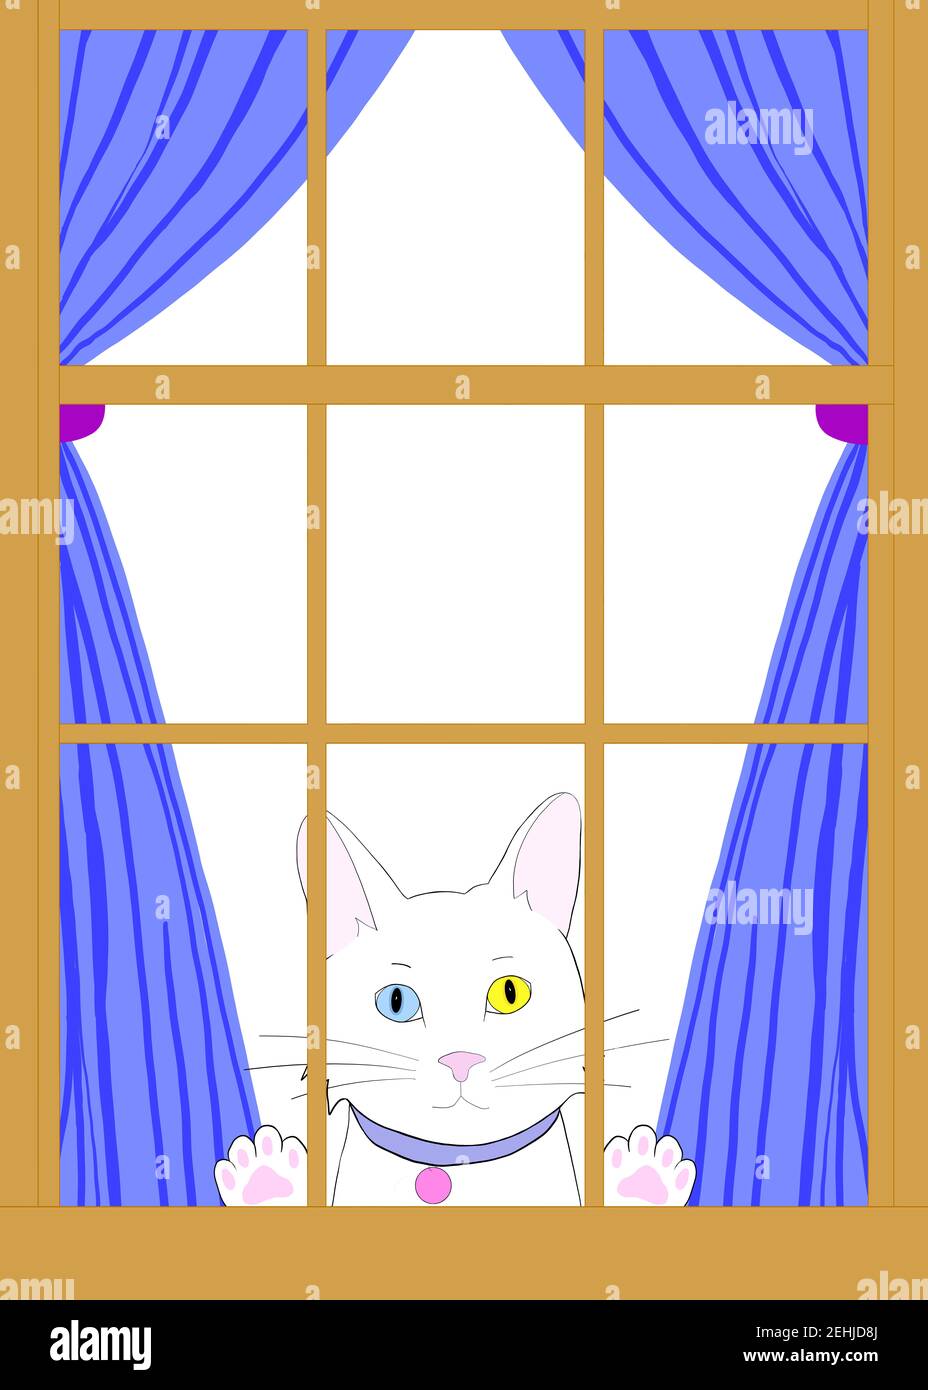 Dessin d'illustration d'un chat blanc de dessin animé avec l'hétérochromie peaking à travers une fenêtre en bois brun avec des pattes sur le verre. Regarder le spectateur longi Banque D'Images